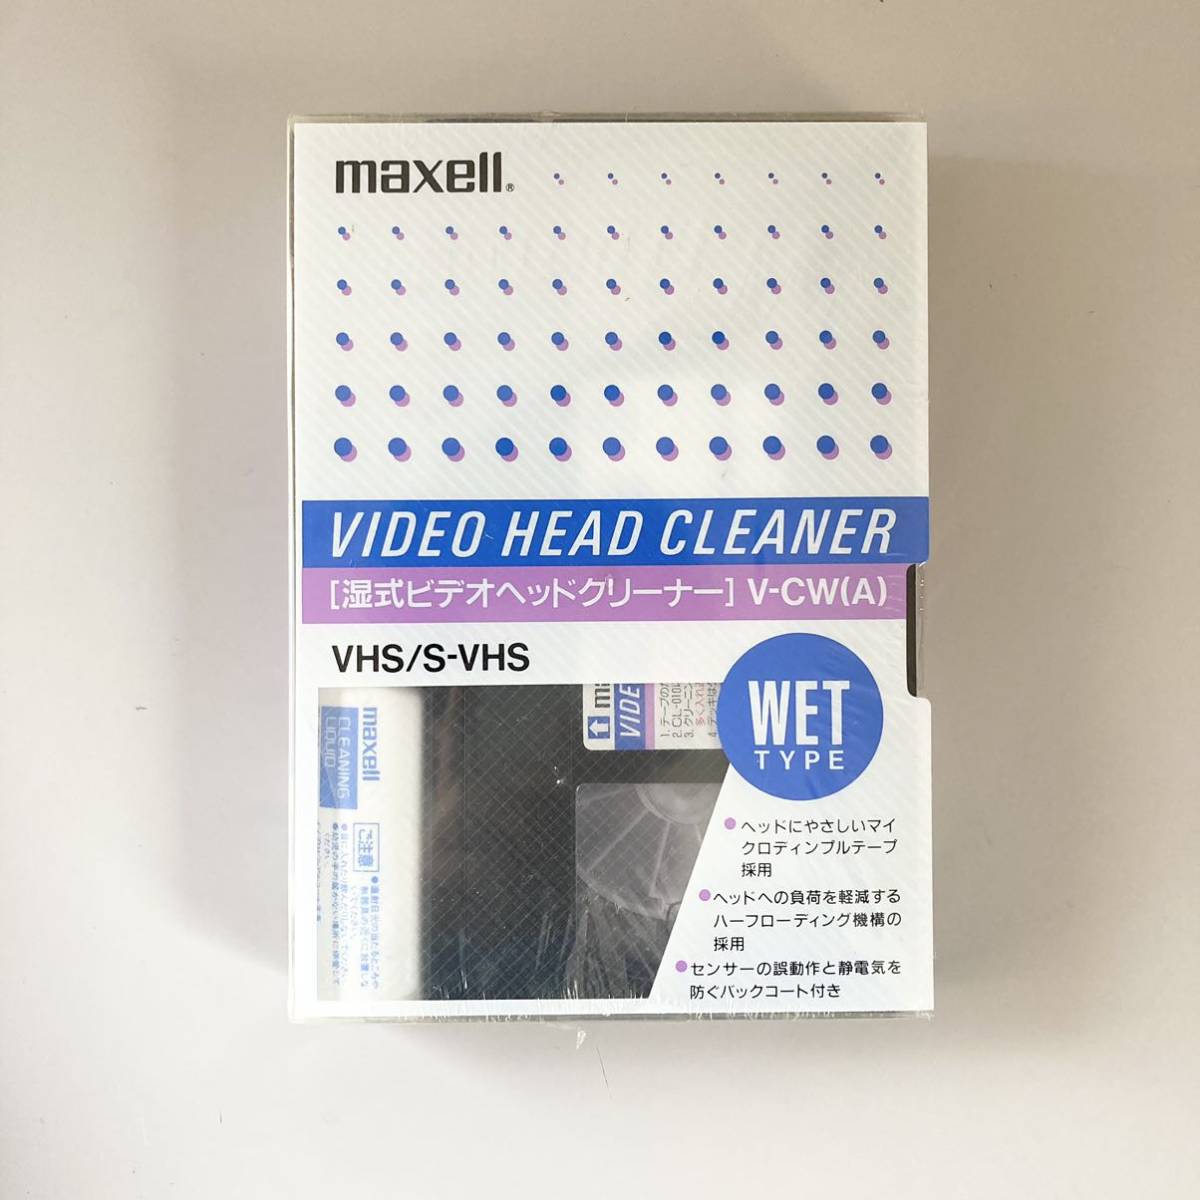 maxell マクセル S-VHS対応 VHS ビデオヘッドクリーナー湿式 V-CW(A)の画像1